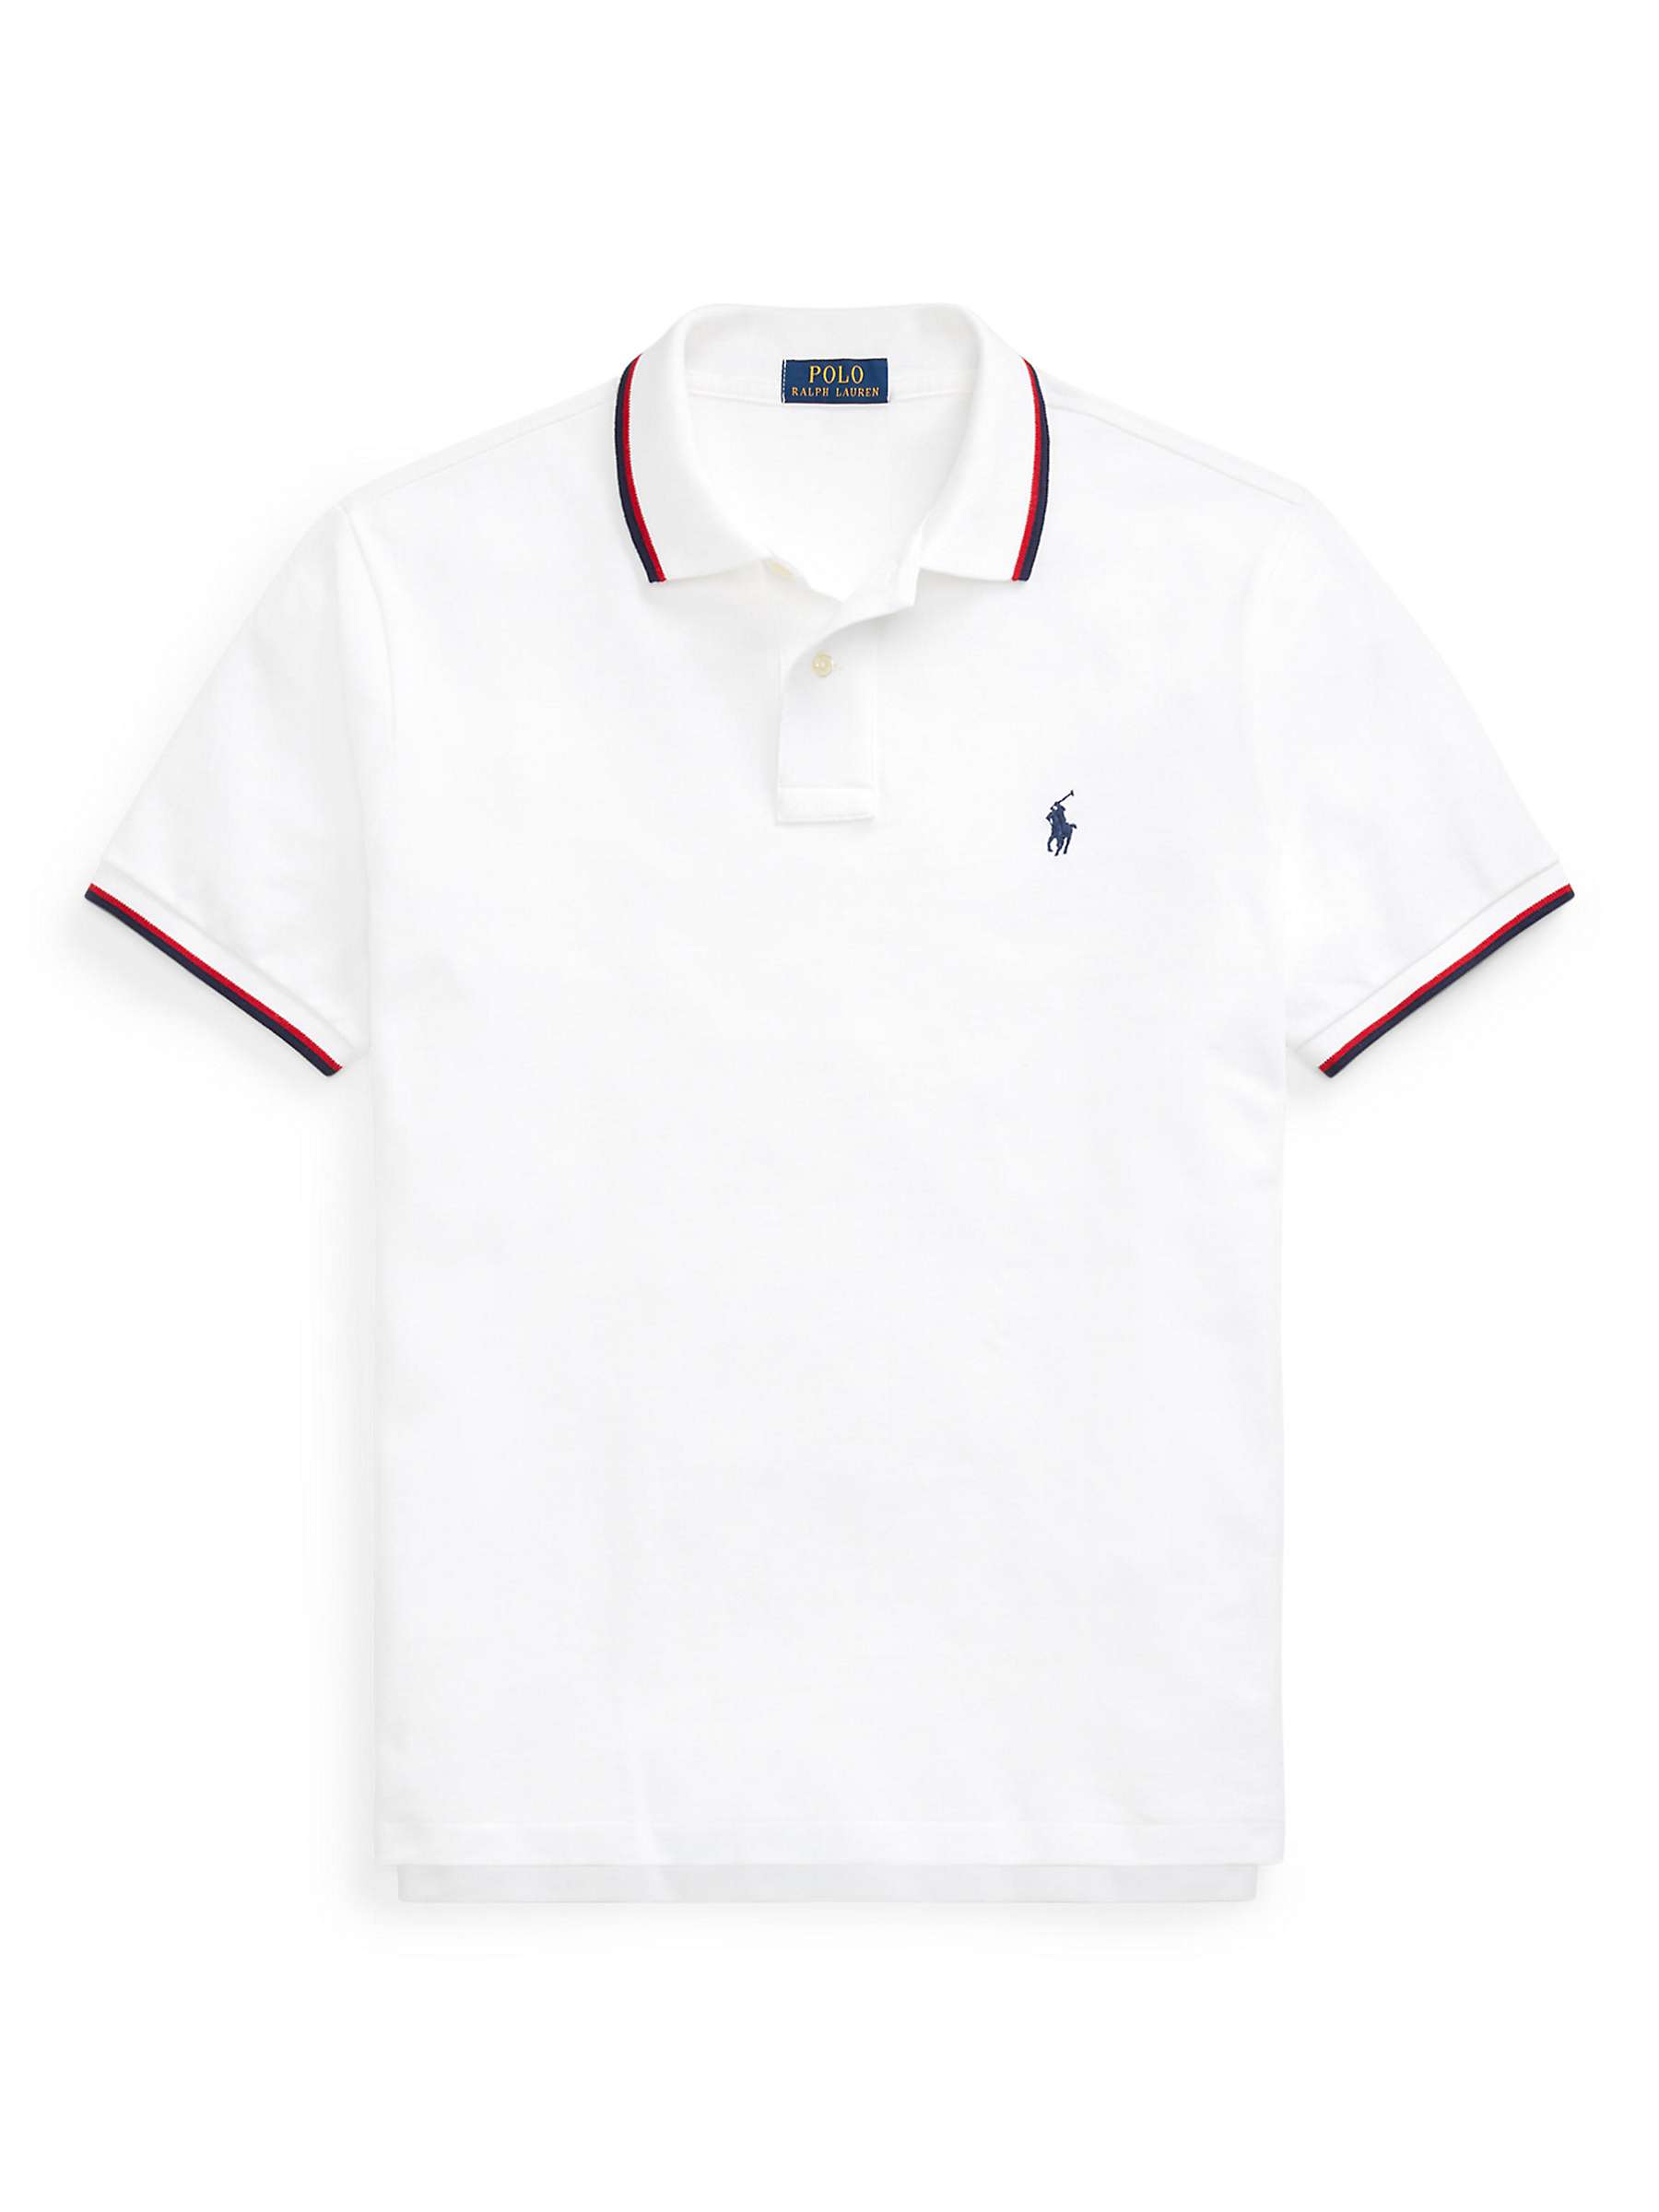 Buy Ralph Lauren Custom Slim Fit Mesh Polo Shirt, White Online at johnlewis.com